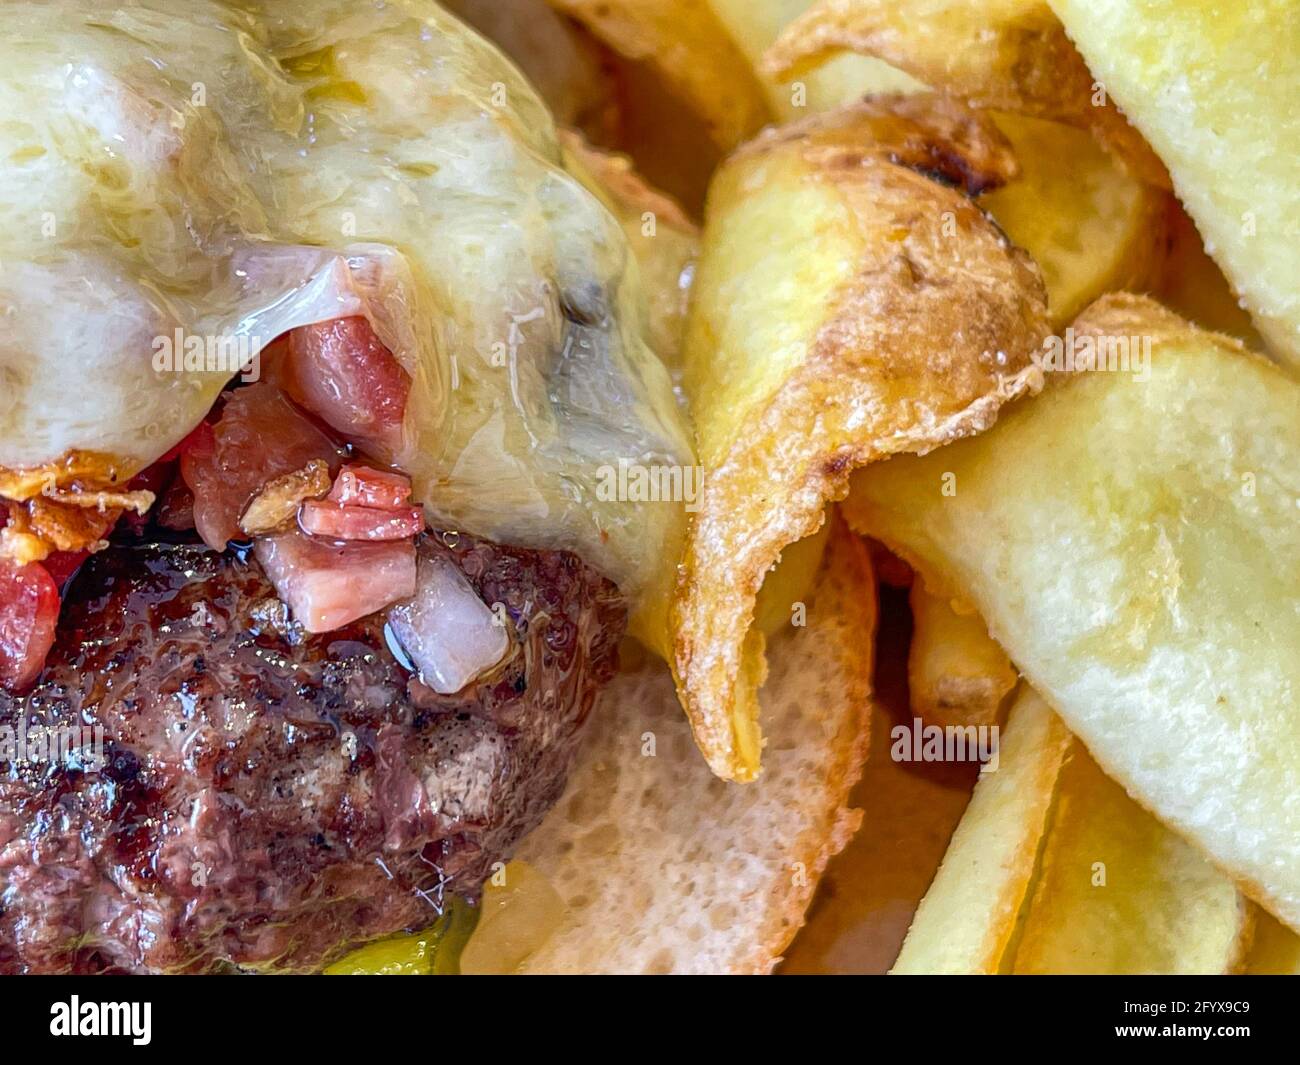 Primo piano di succulenti hamburger appena grigliati con patatine fritte Foto Stock